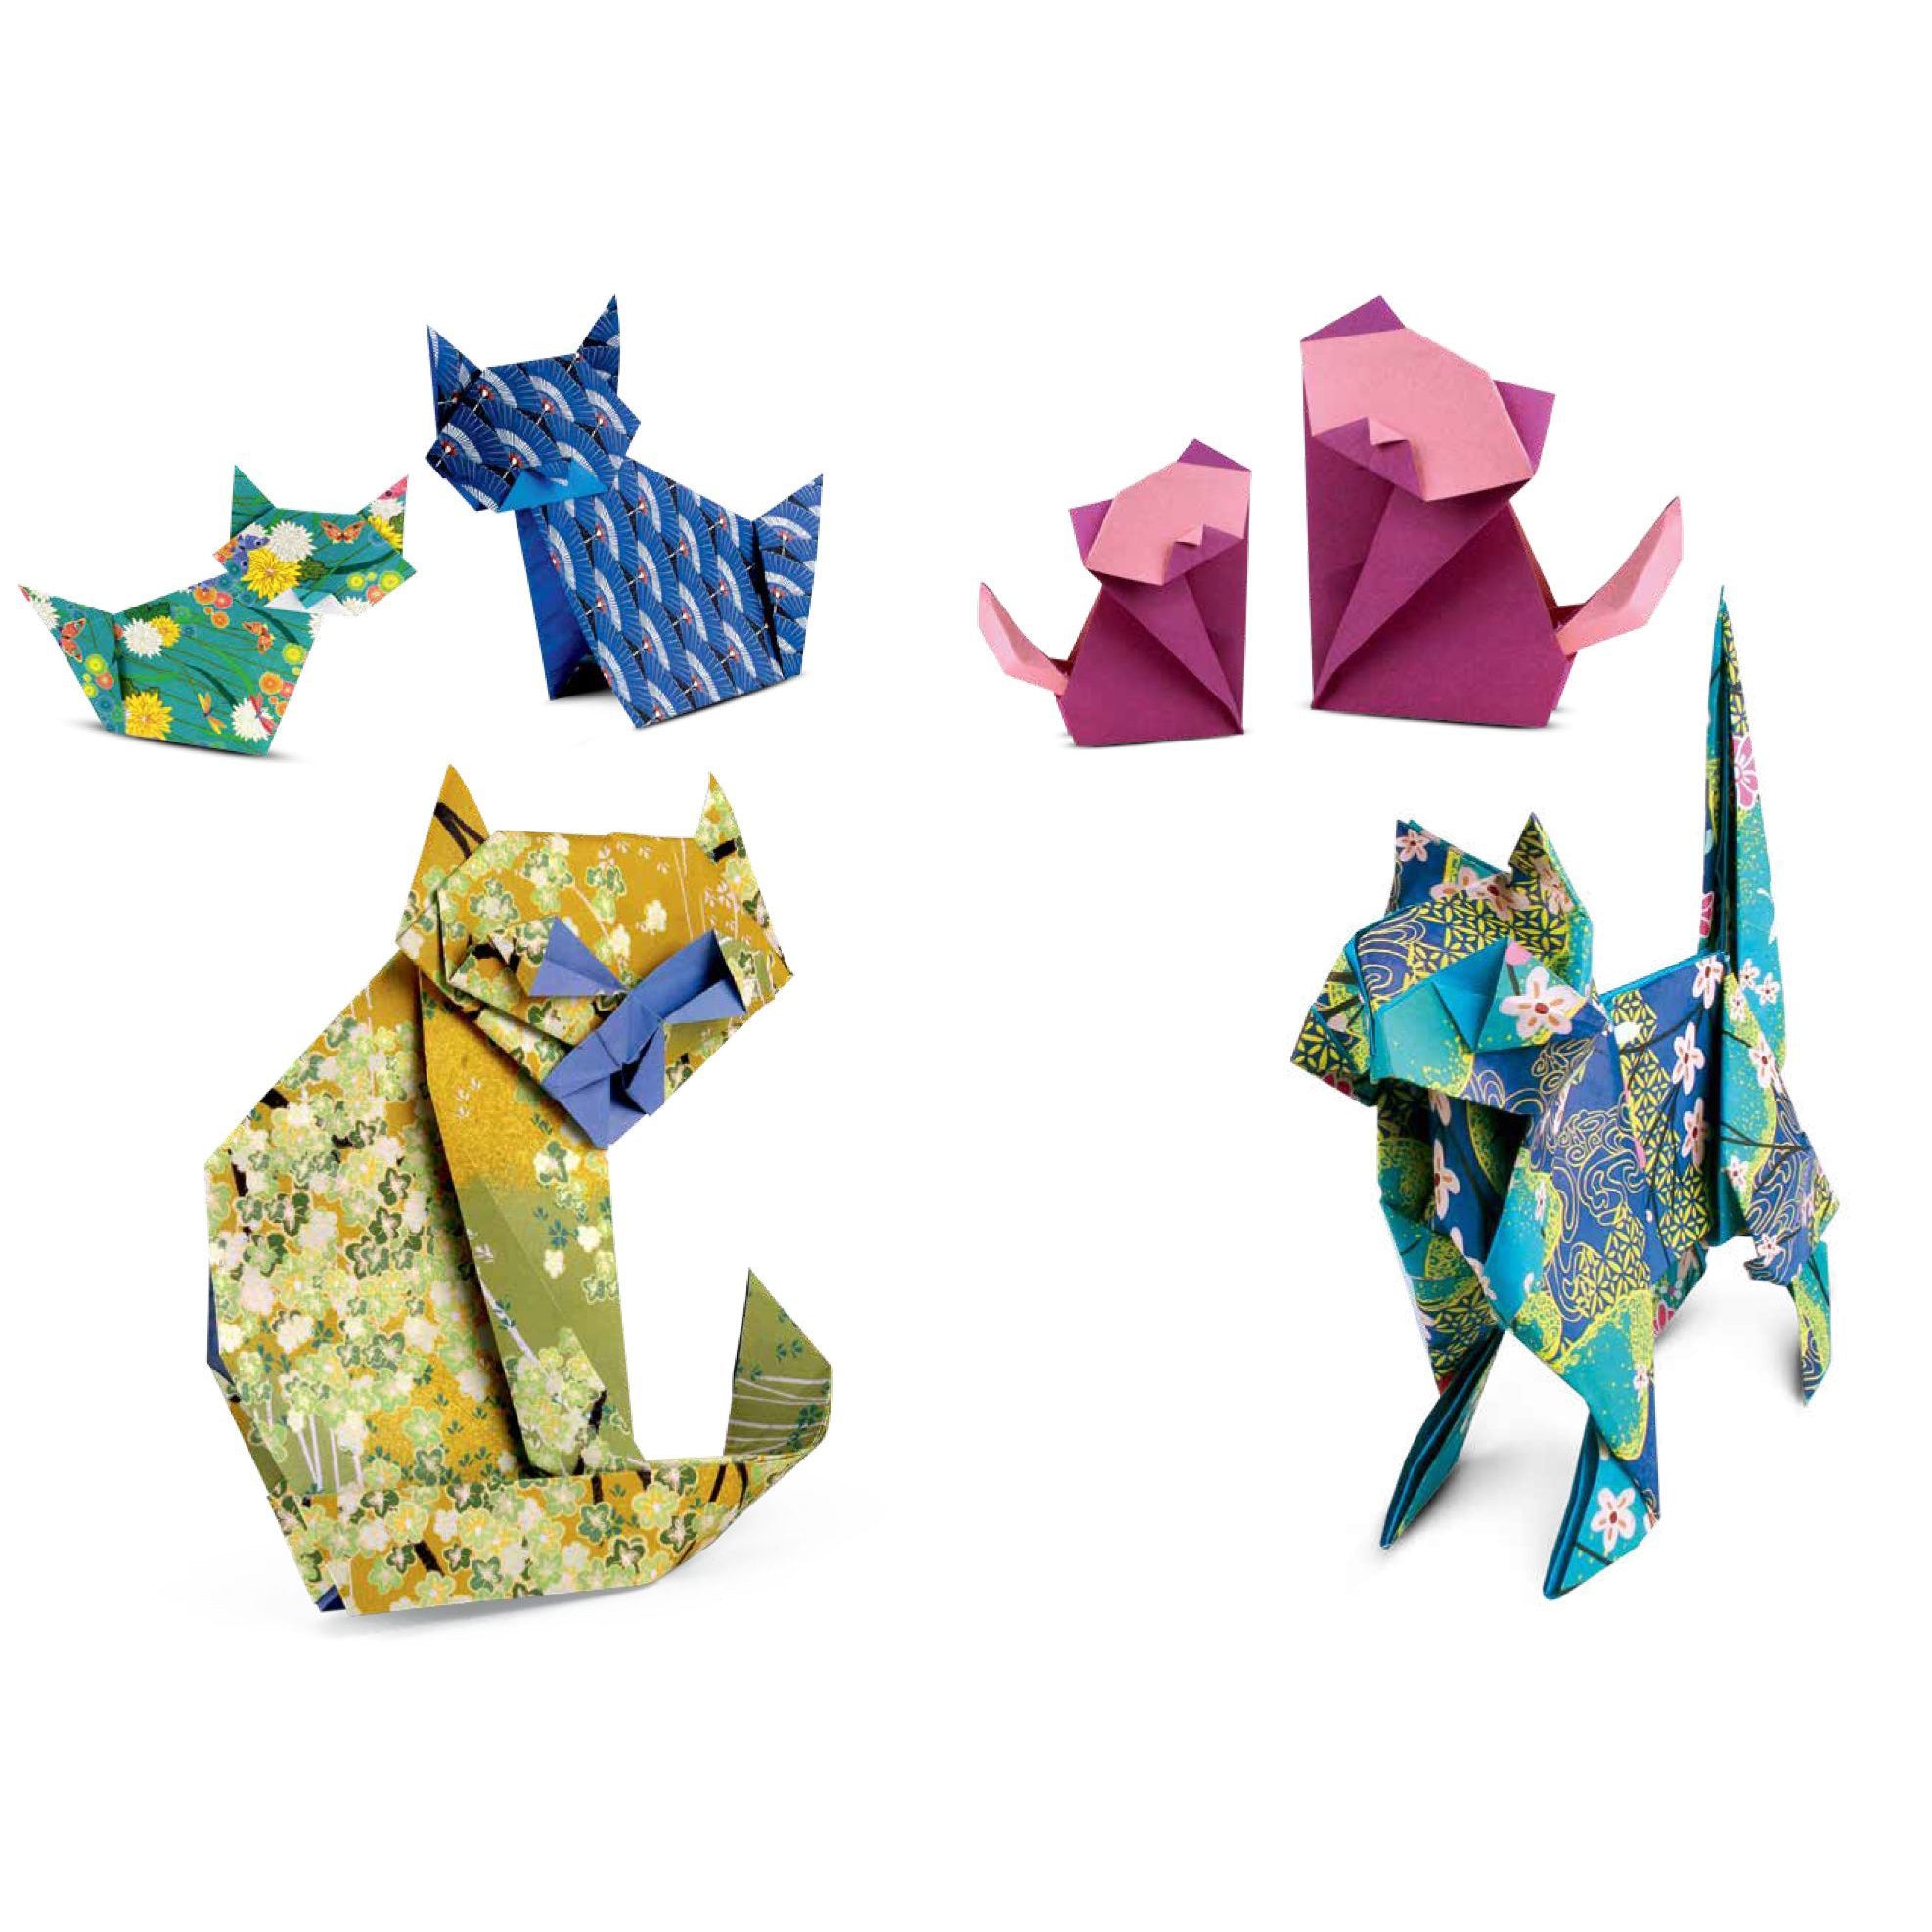 Gatti in origami